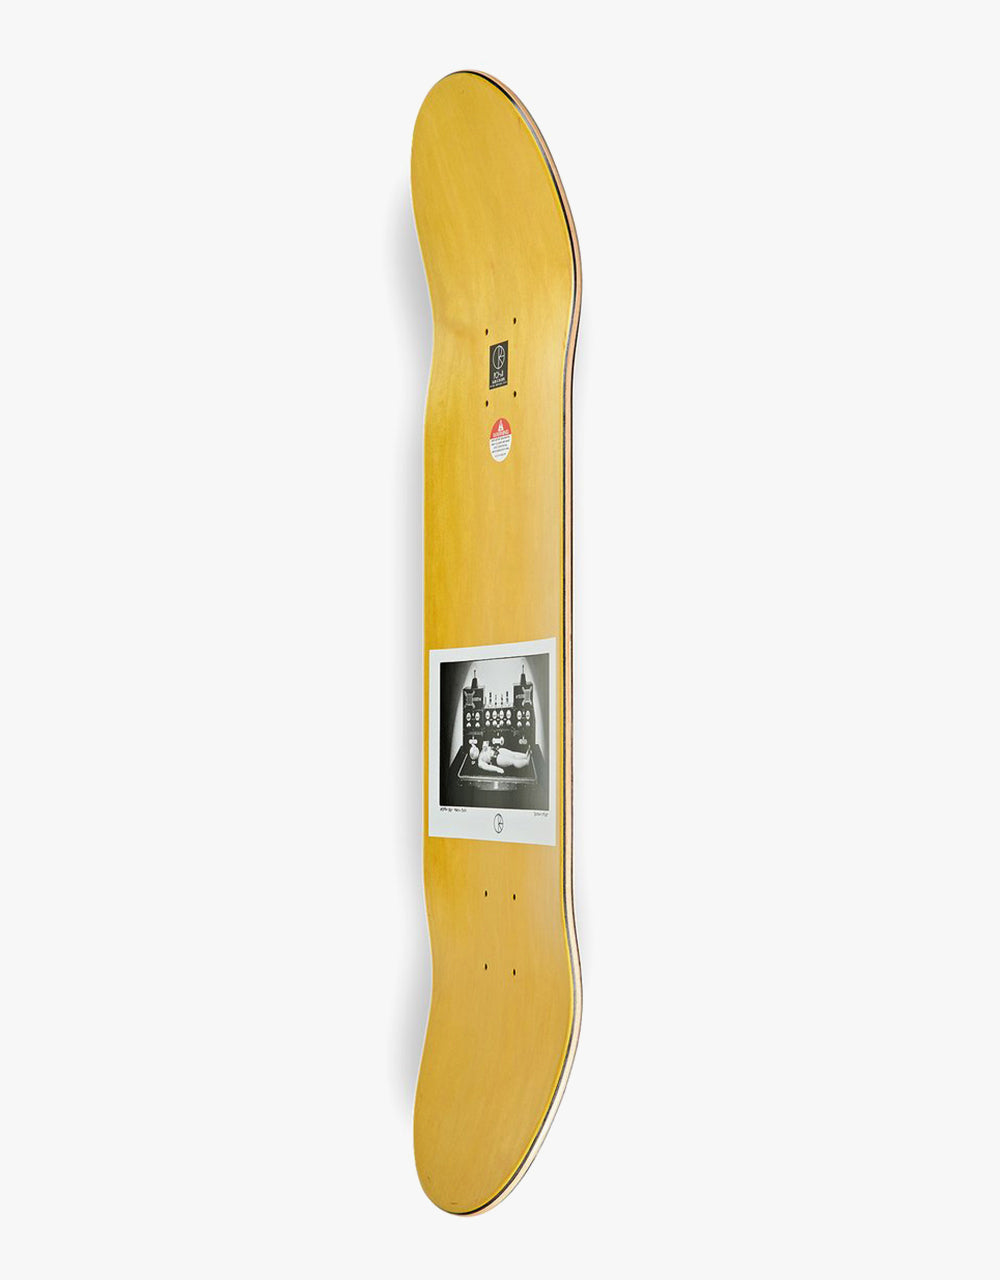 Polar Sanbongi Astro Boy Skateboard Deck - 8.25"